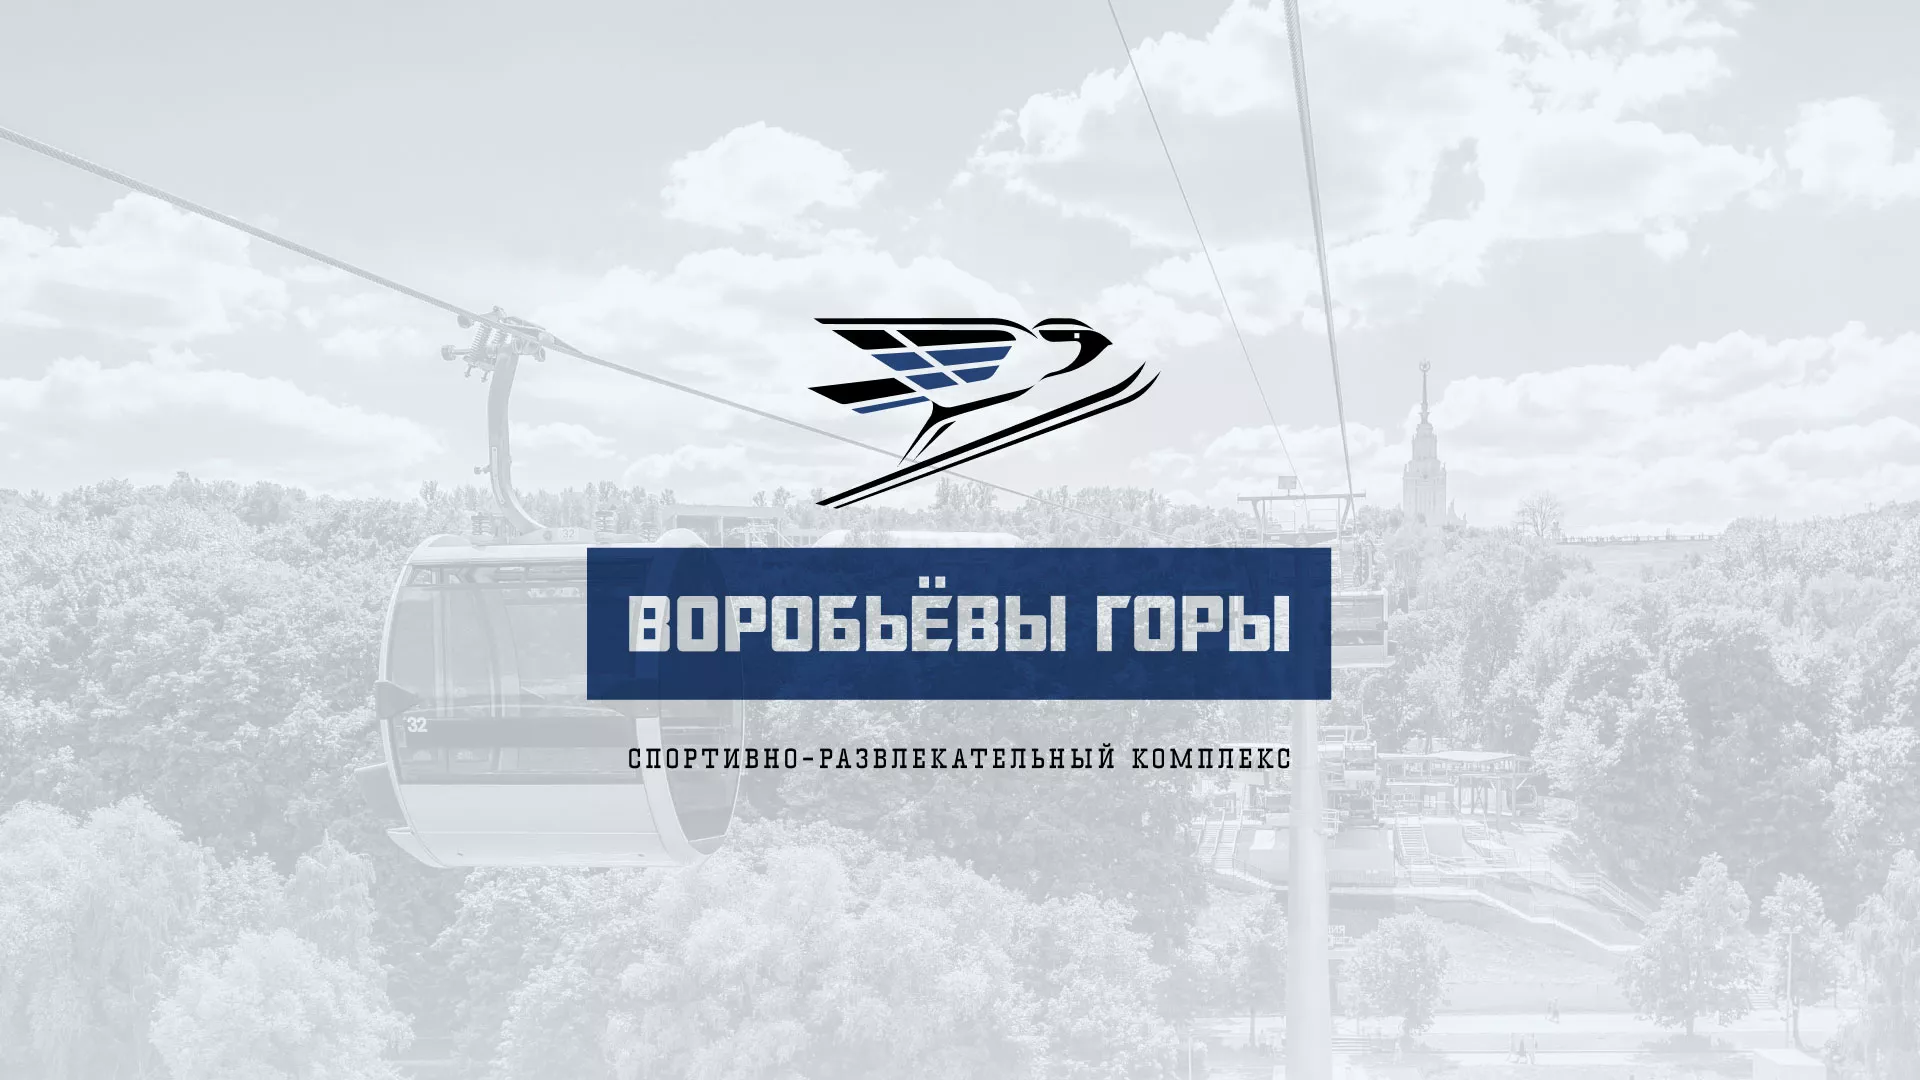 Разработка сайта в Морозовске для спортивно-развлекательного комплекса «Воробьёвы горы»